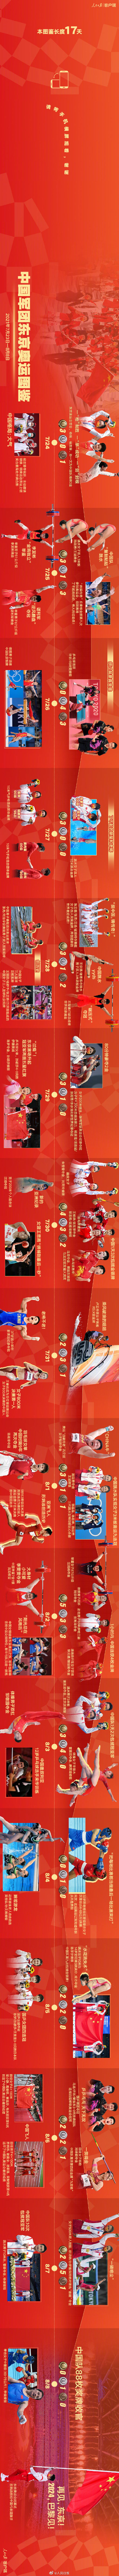 :中国代表团你们太棒了太牛了 过去17天中国奥运健儿带来的感动回顾